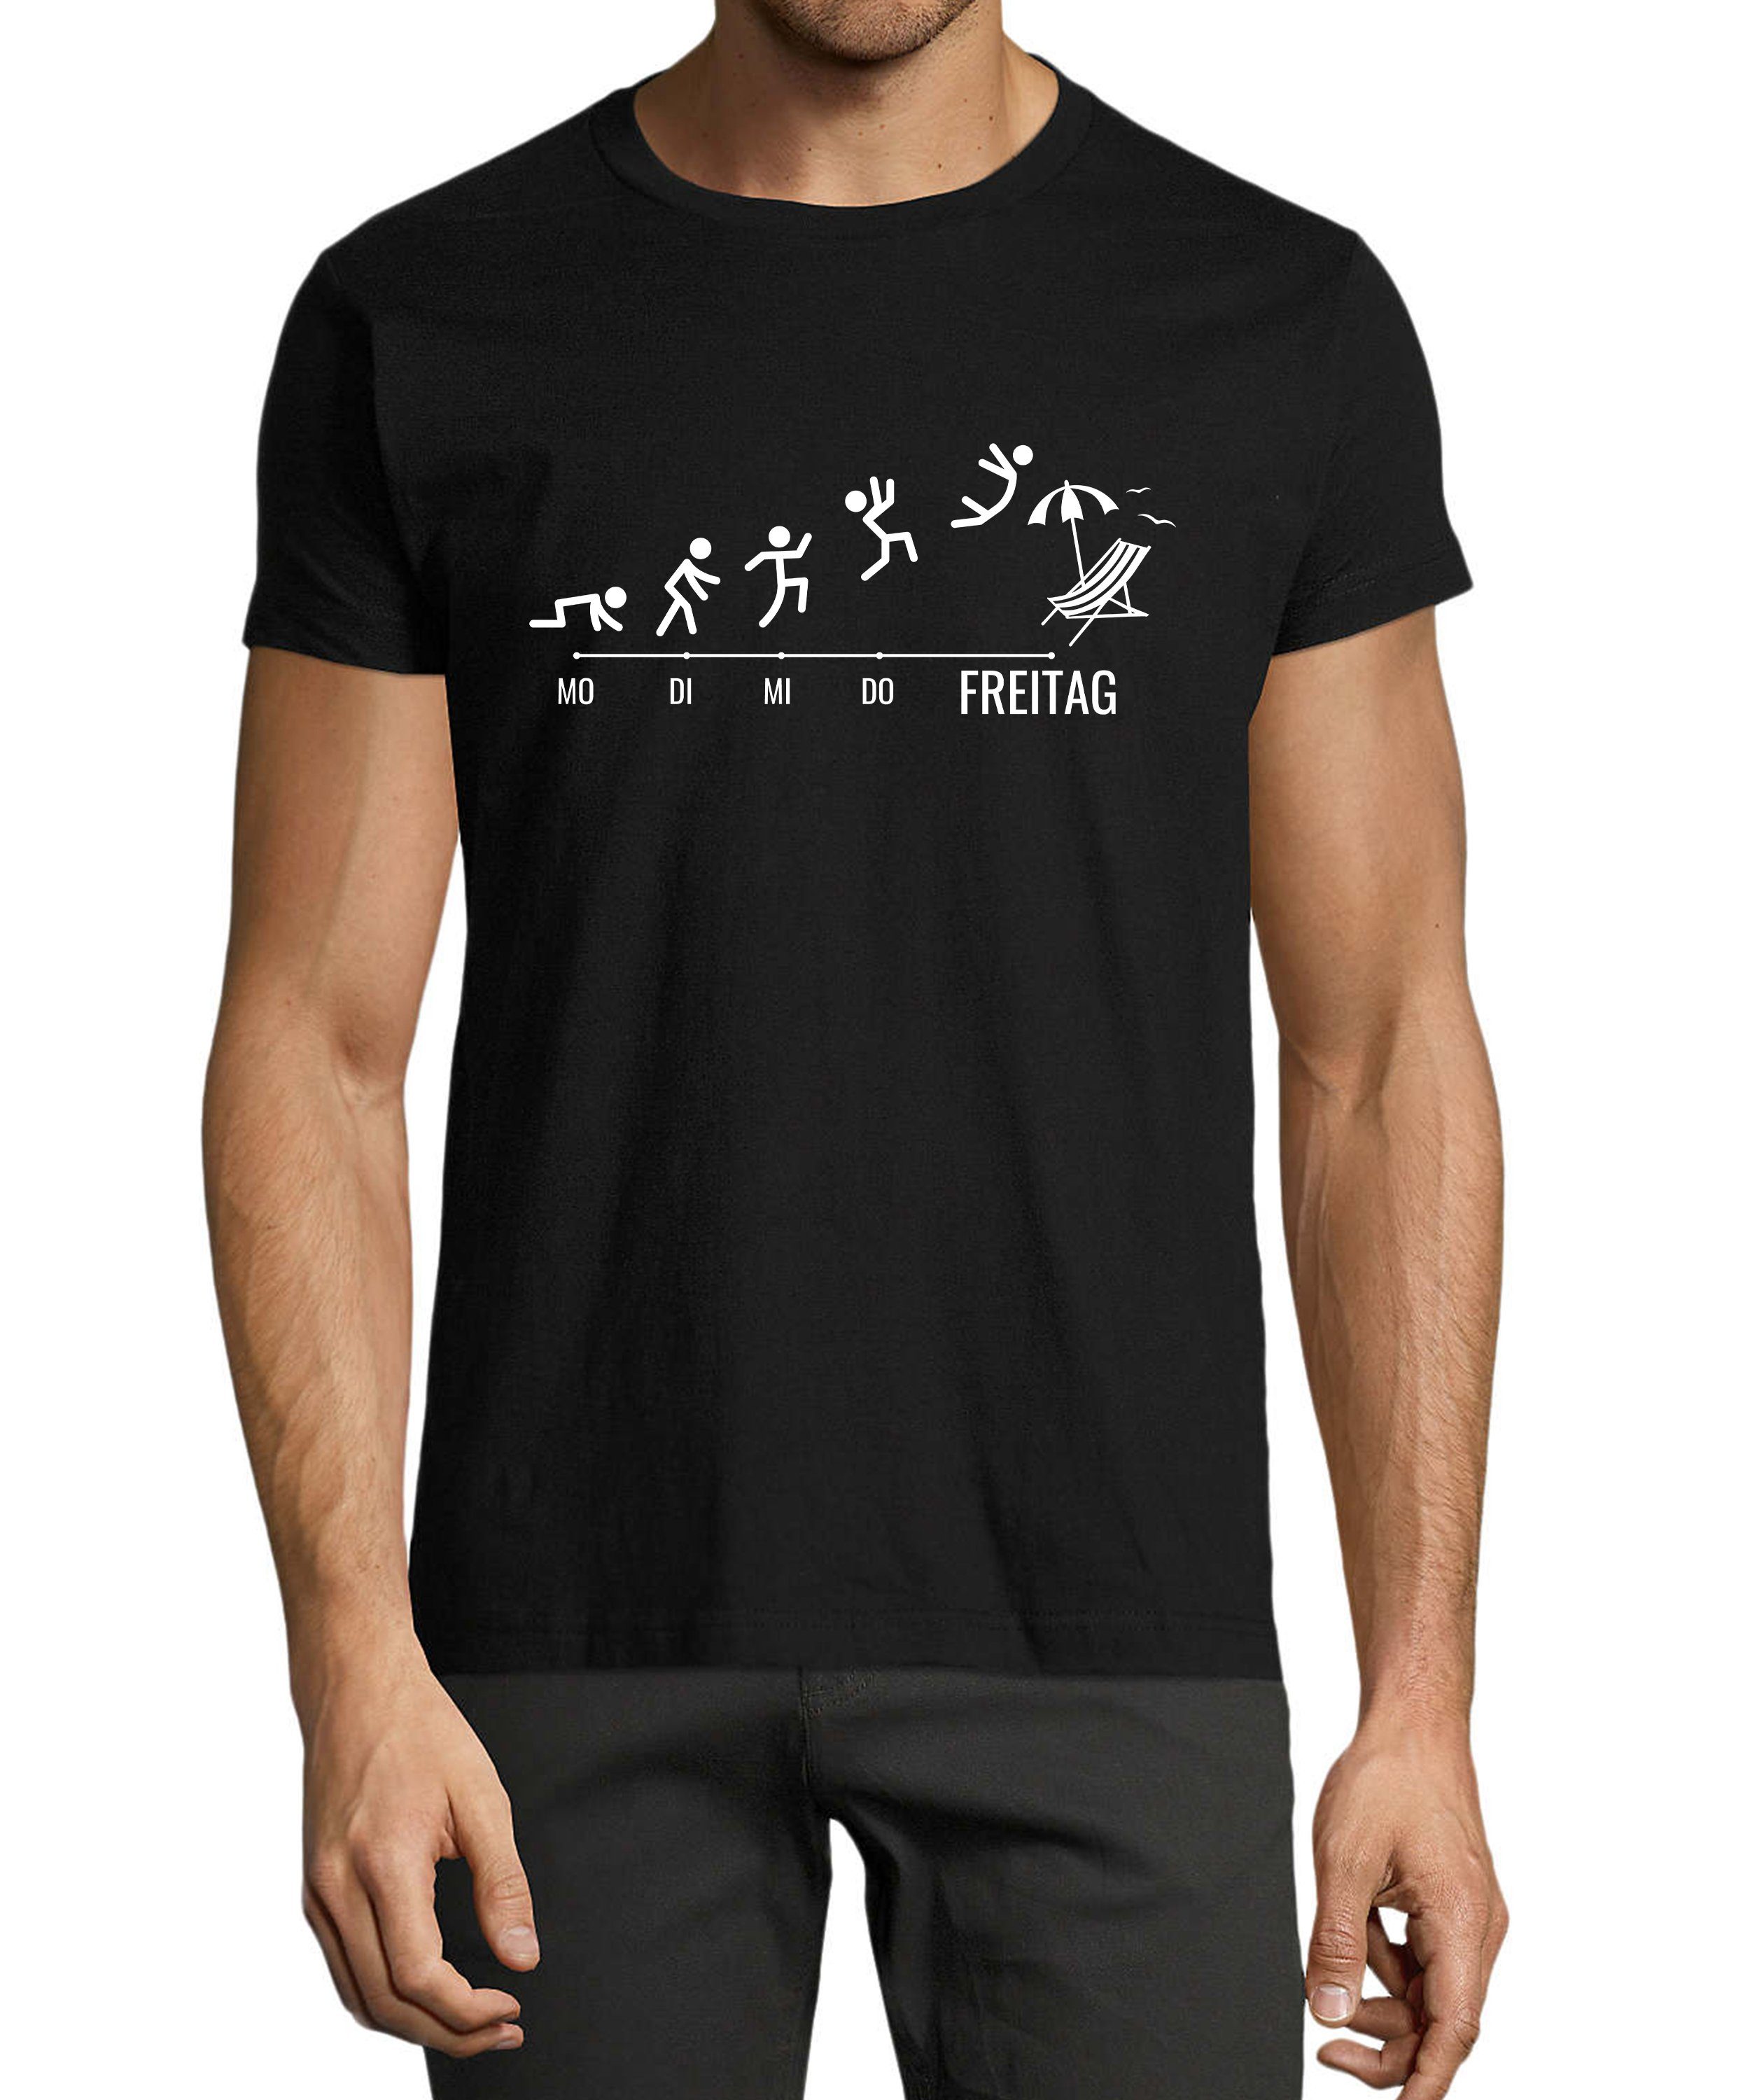 MyDesign24 T-Shirt Herren Fun Print Shirt - Wochentage mit Strichmännchen Baumwollshirt mit Aufdruck Regular Fit, i309